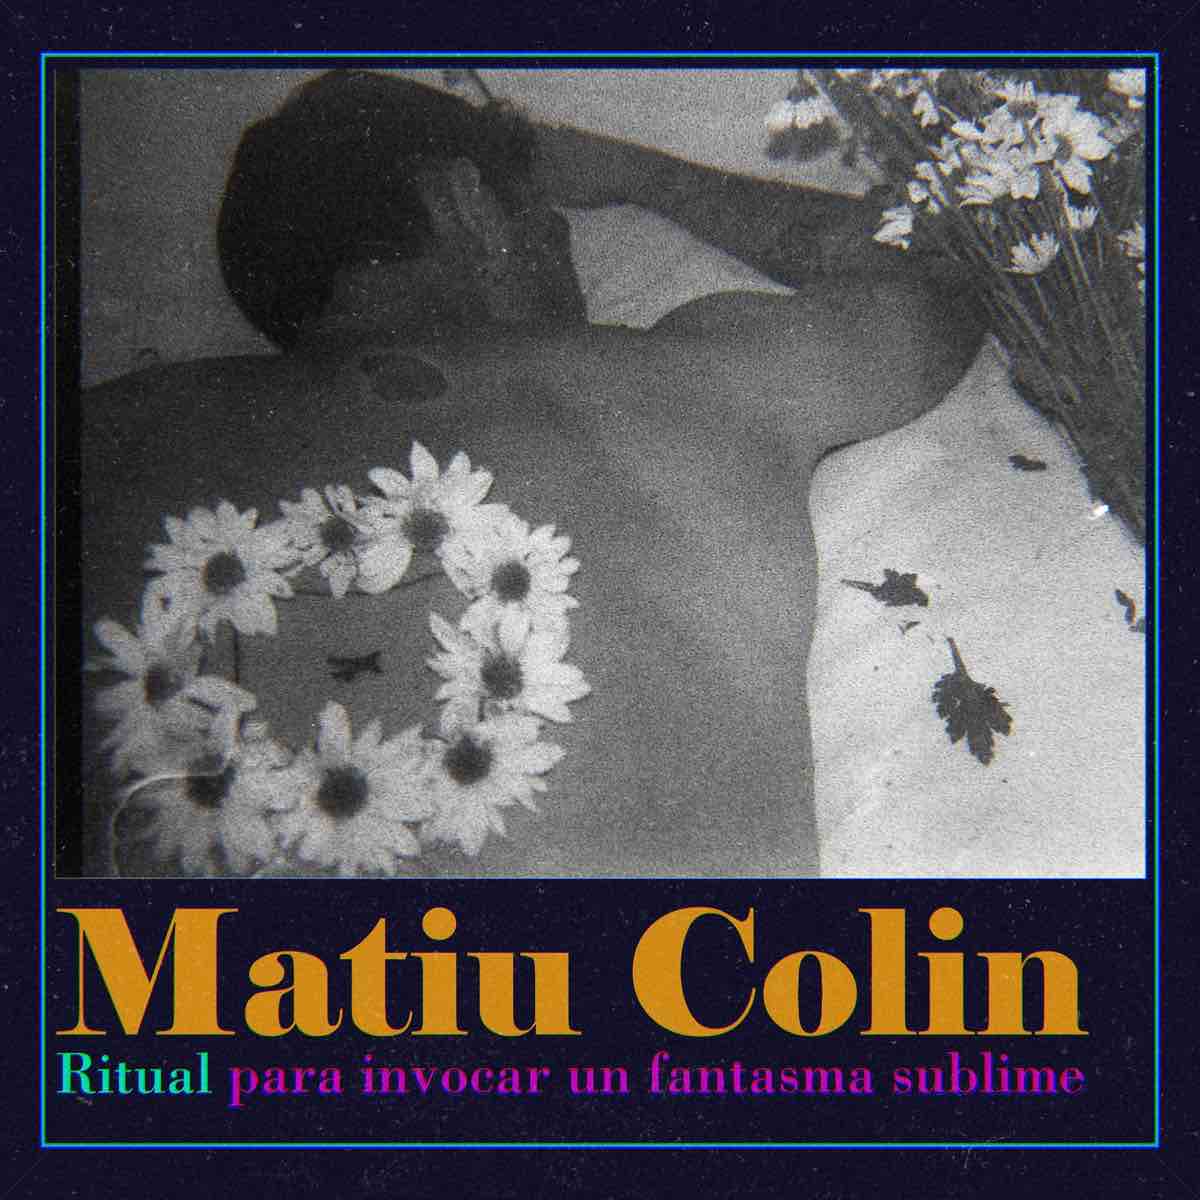 Descubran el amor reverberado de Matiu Colin en su nuevo disco 